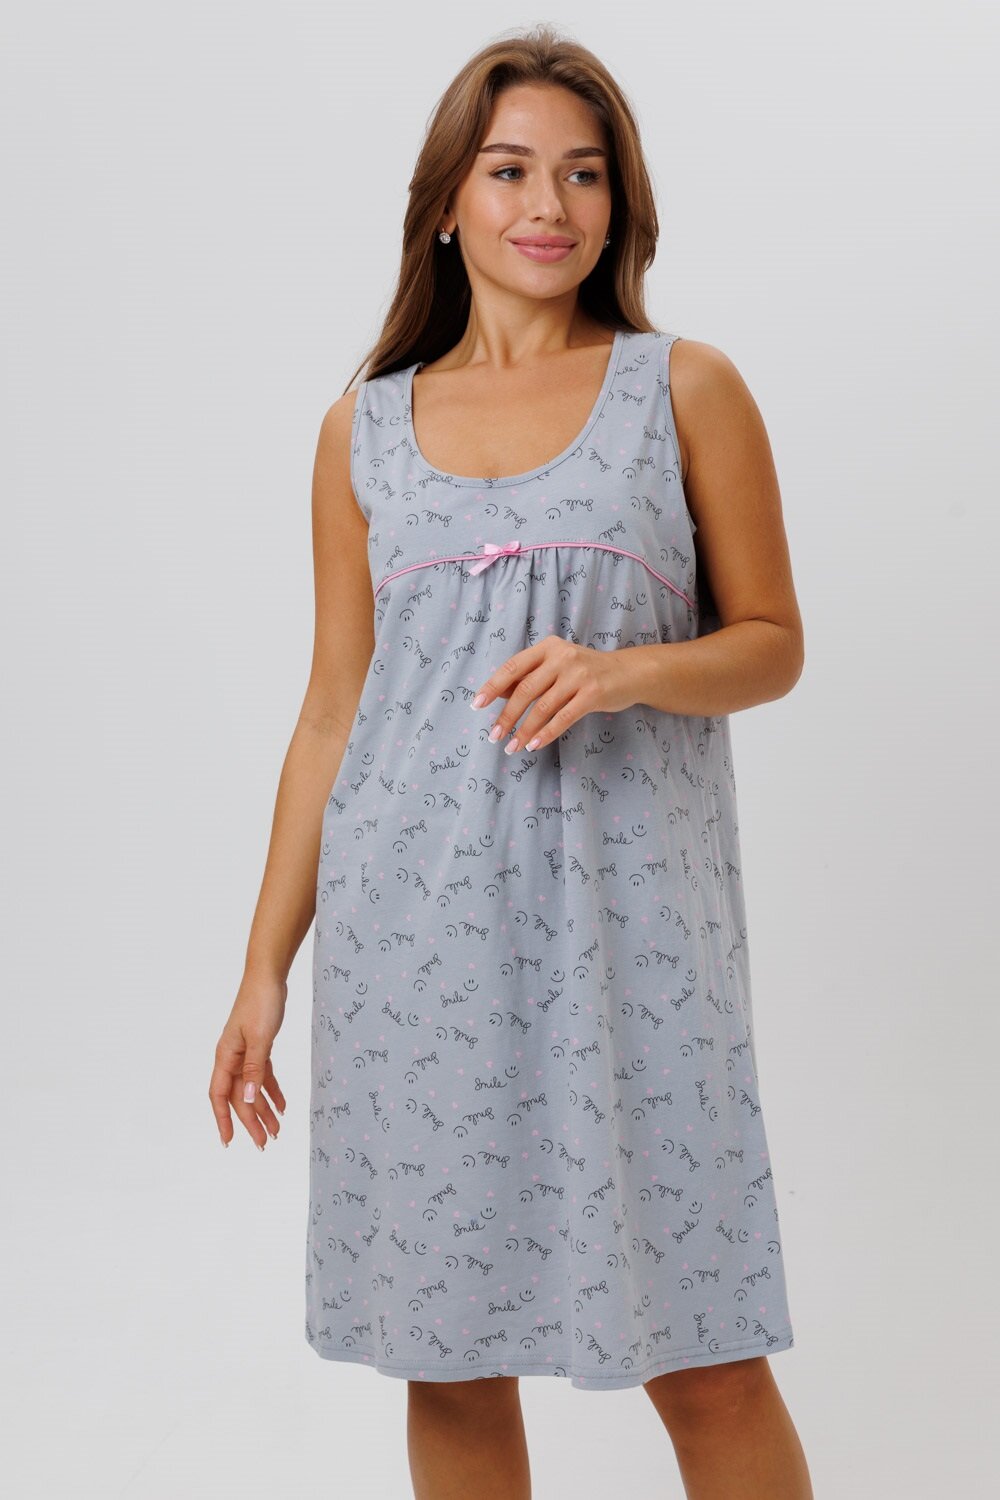 Сорочка женская ночная Modellini 1629/2 цвет серый, размер 58 - фотография № 8